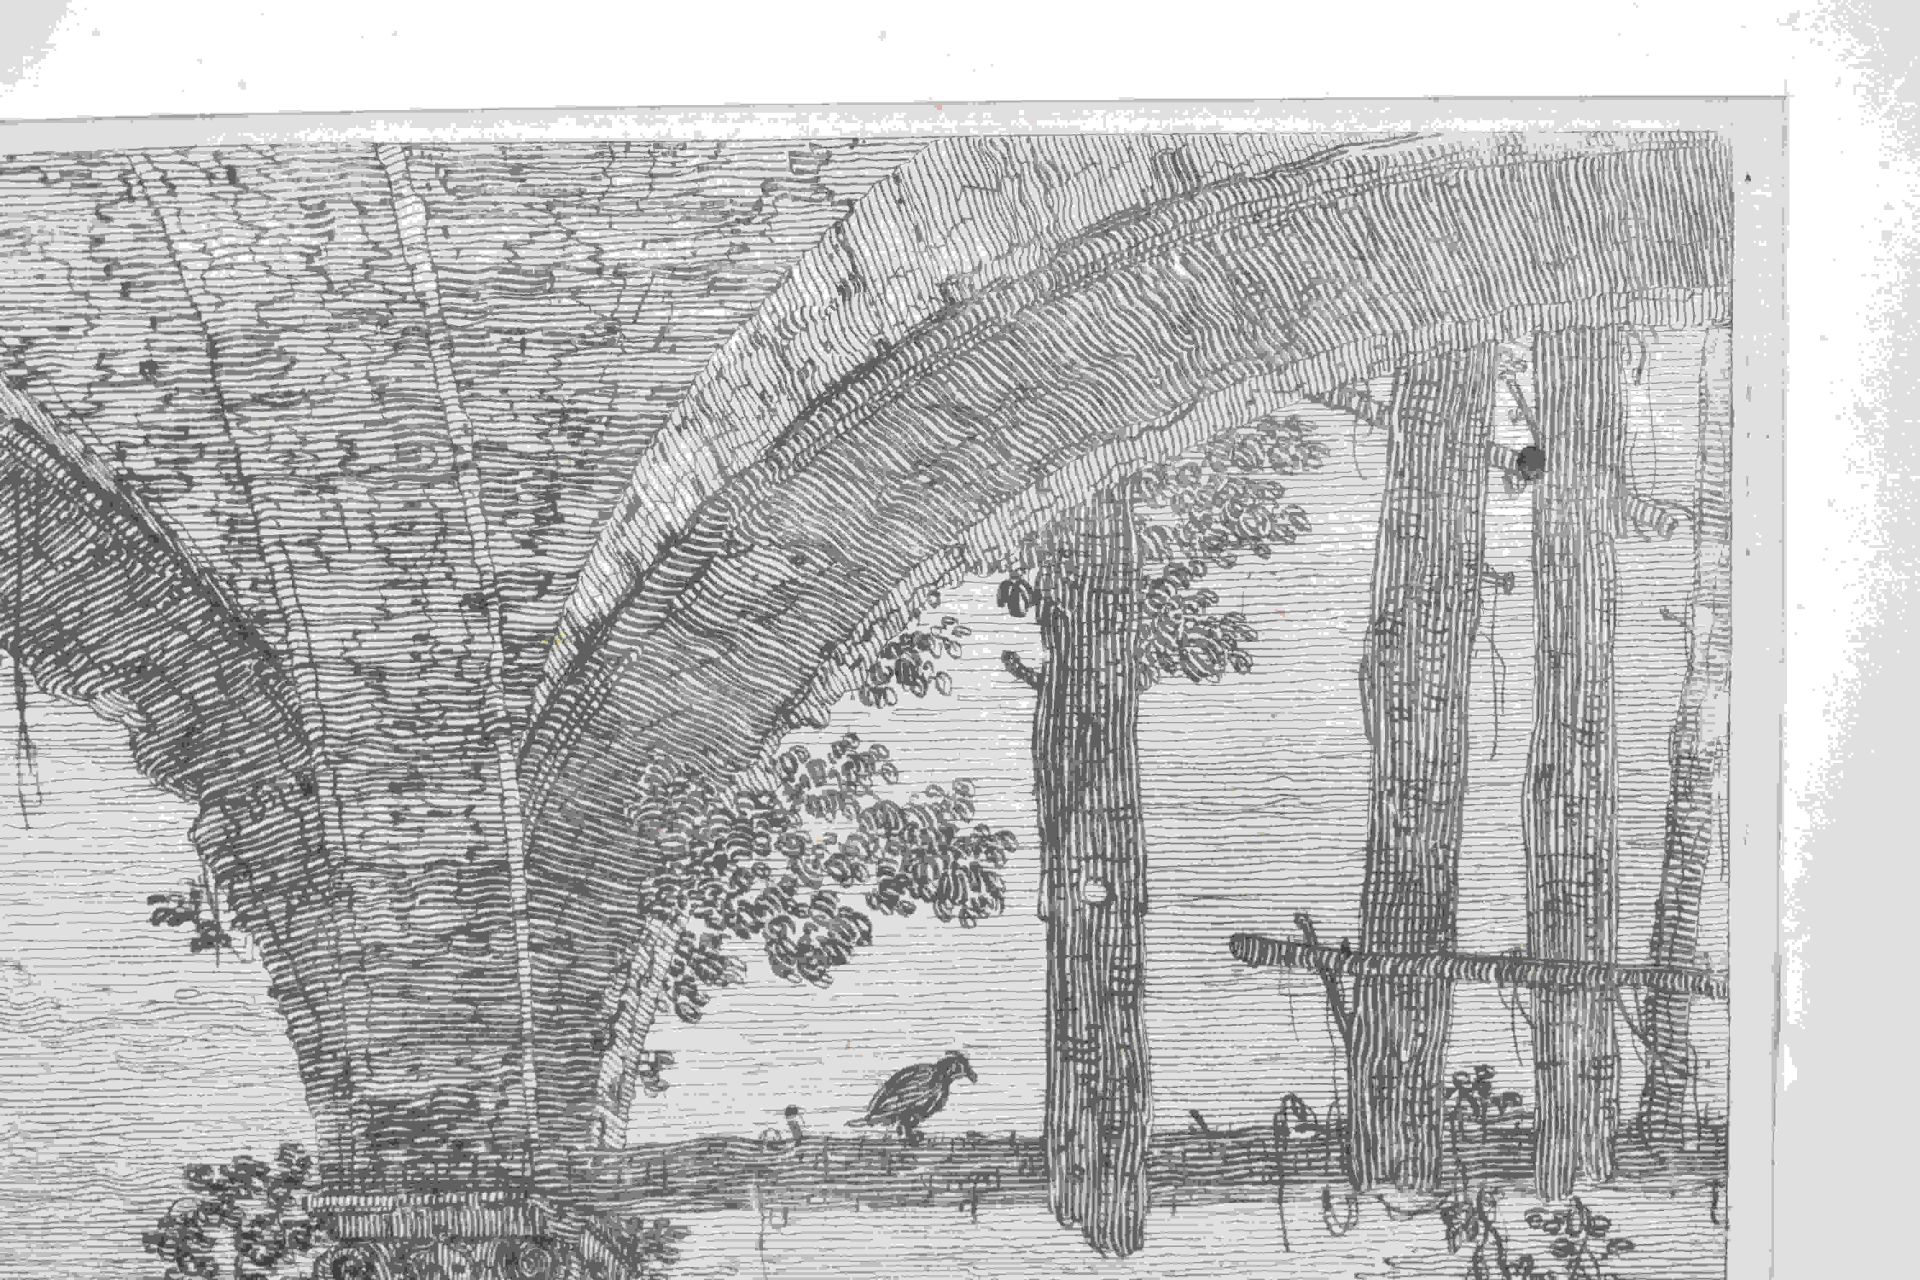 Canal, Giovanni Antonio, gen. Canaletto: Il portico con la lanterna - Bild 6 aus 24